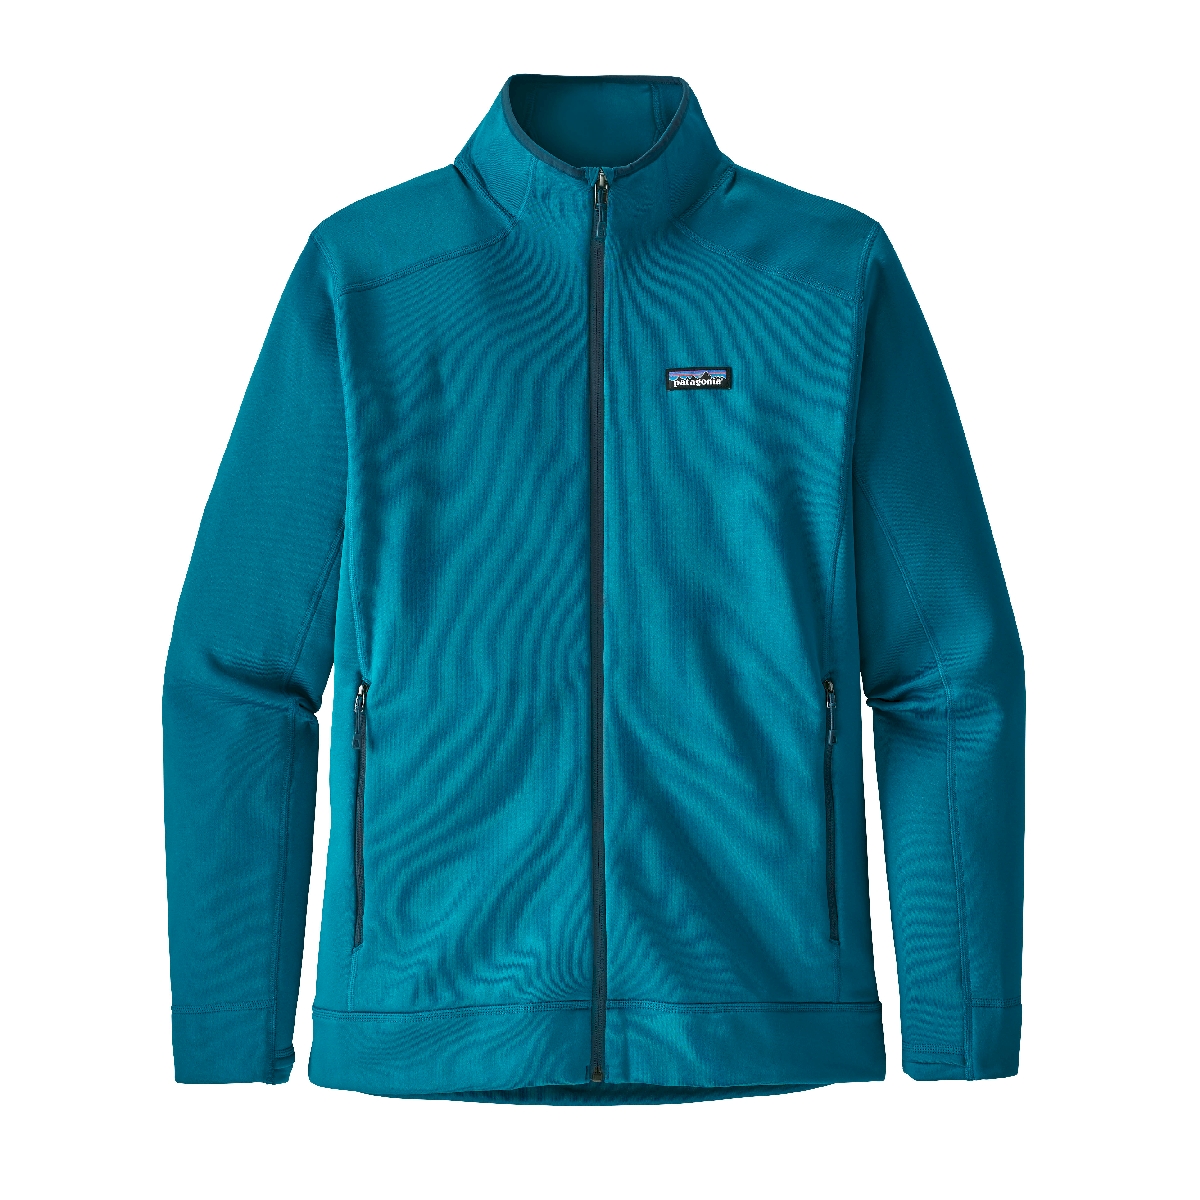 Patagonia - Crosstrek Jacket - Fleece jacket - Men's